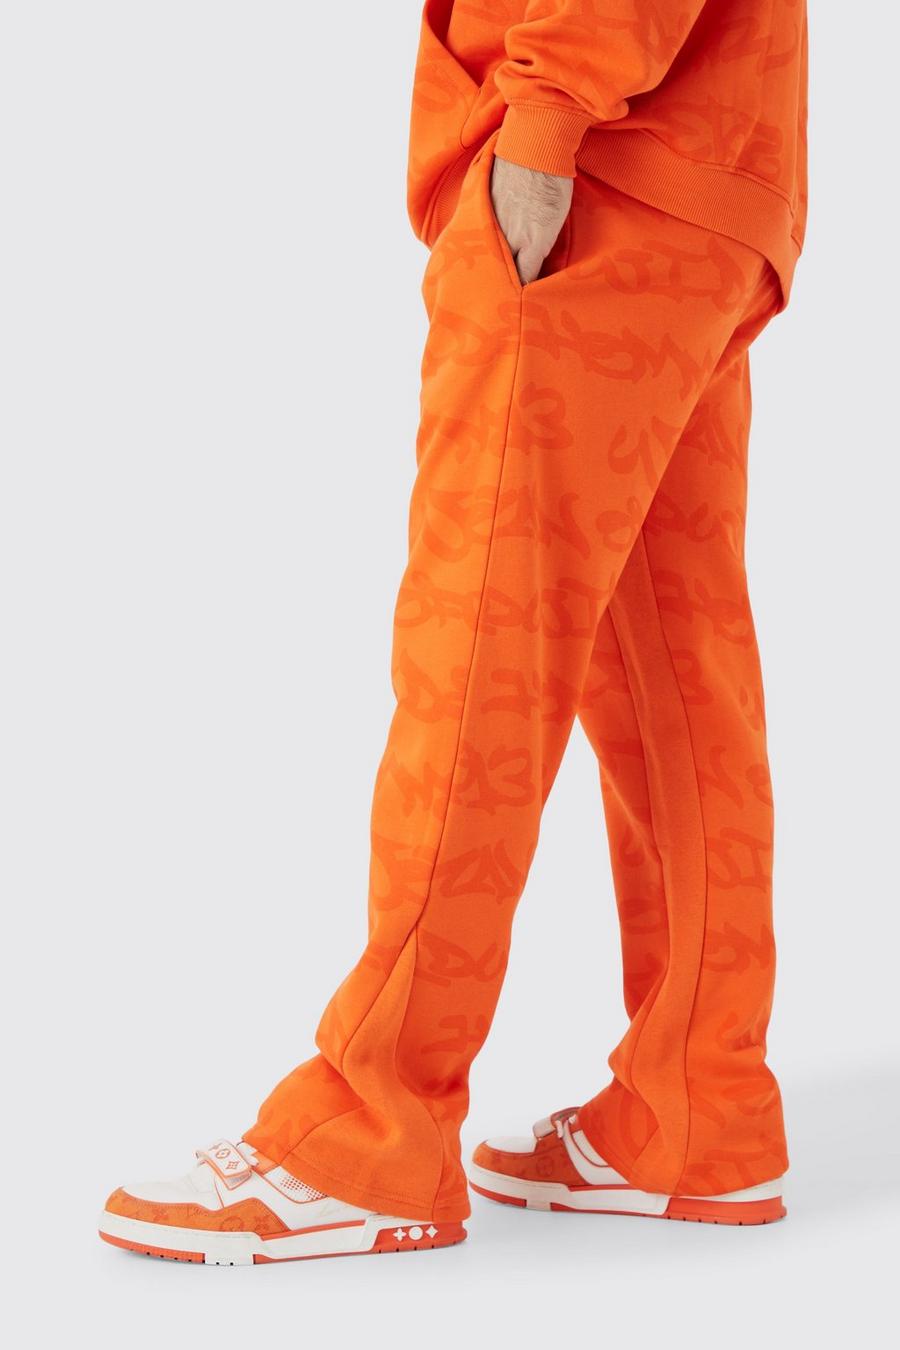 Pantaloni tuta stile Graffiti con inserti all over, Orange